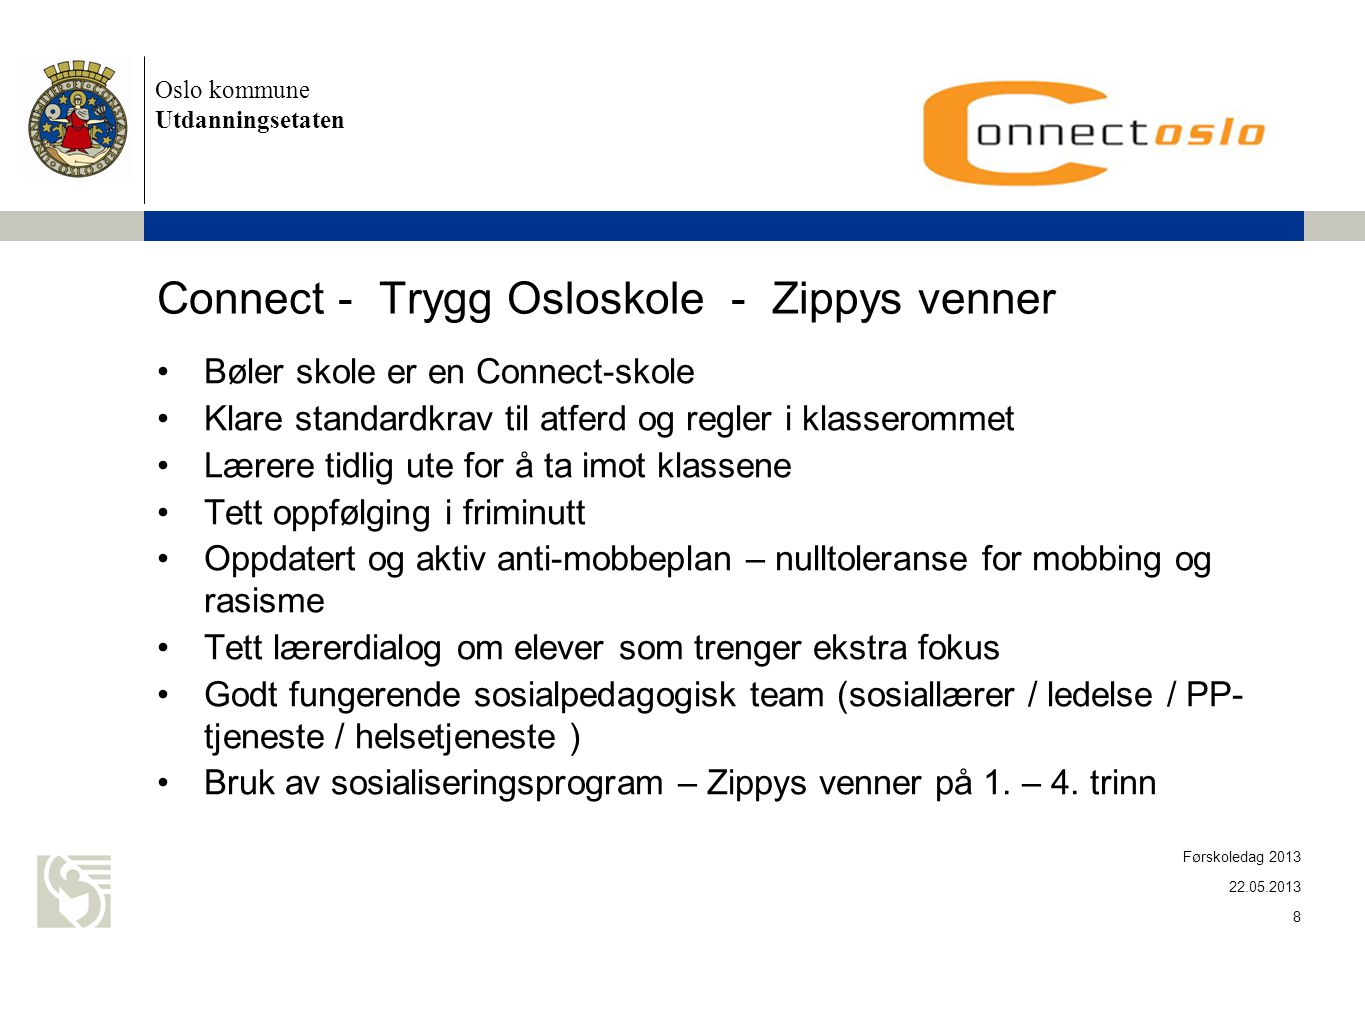 Connect - Trygg Osloskole - Zippys venner